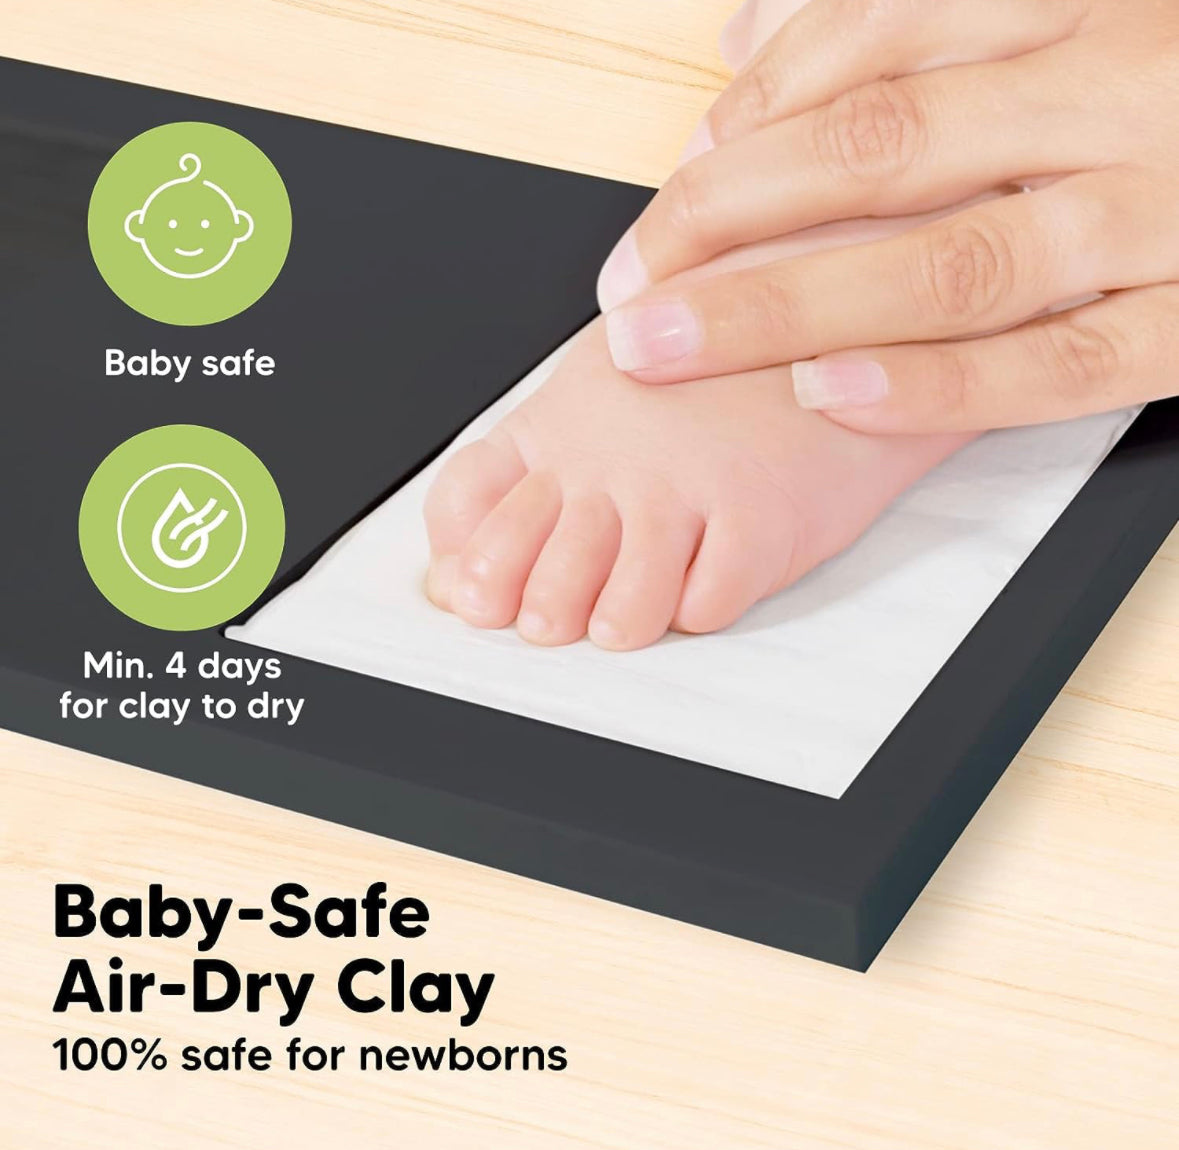 KeaBabies Baby Handprint Footprint Keepsake Bundle.